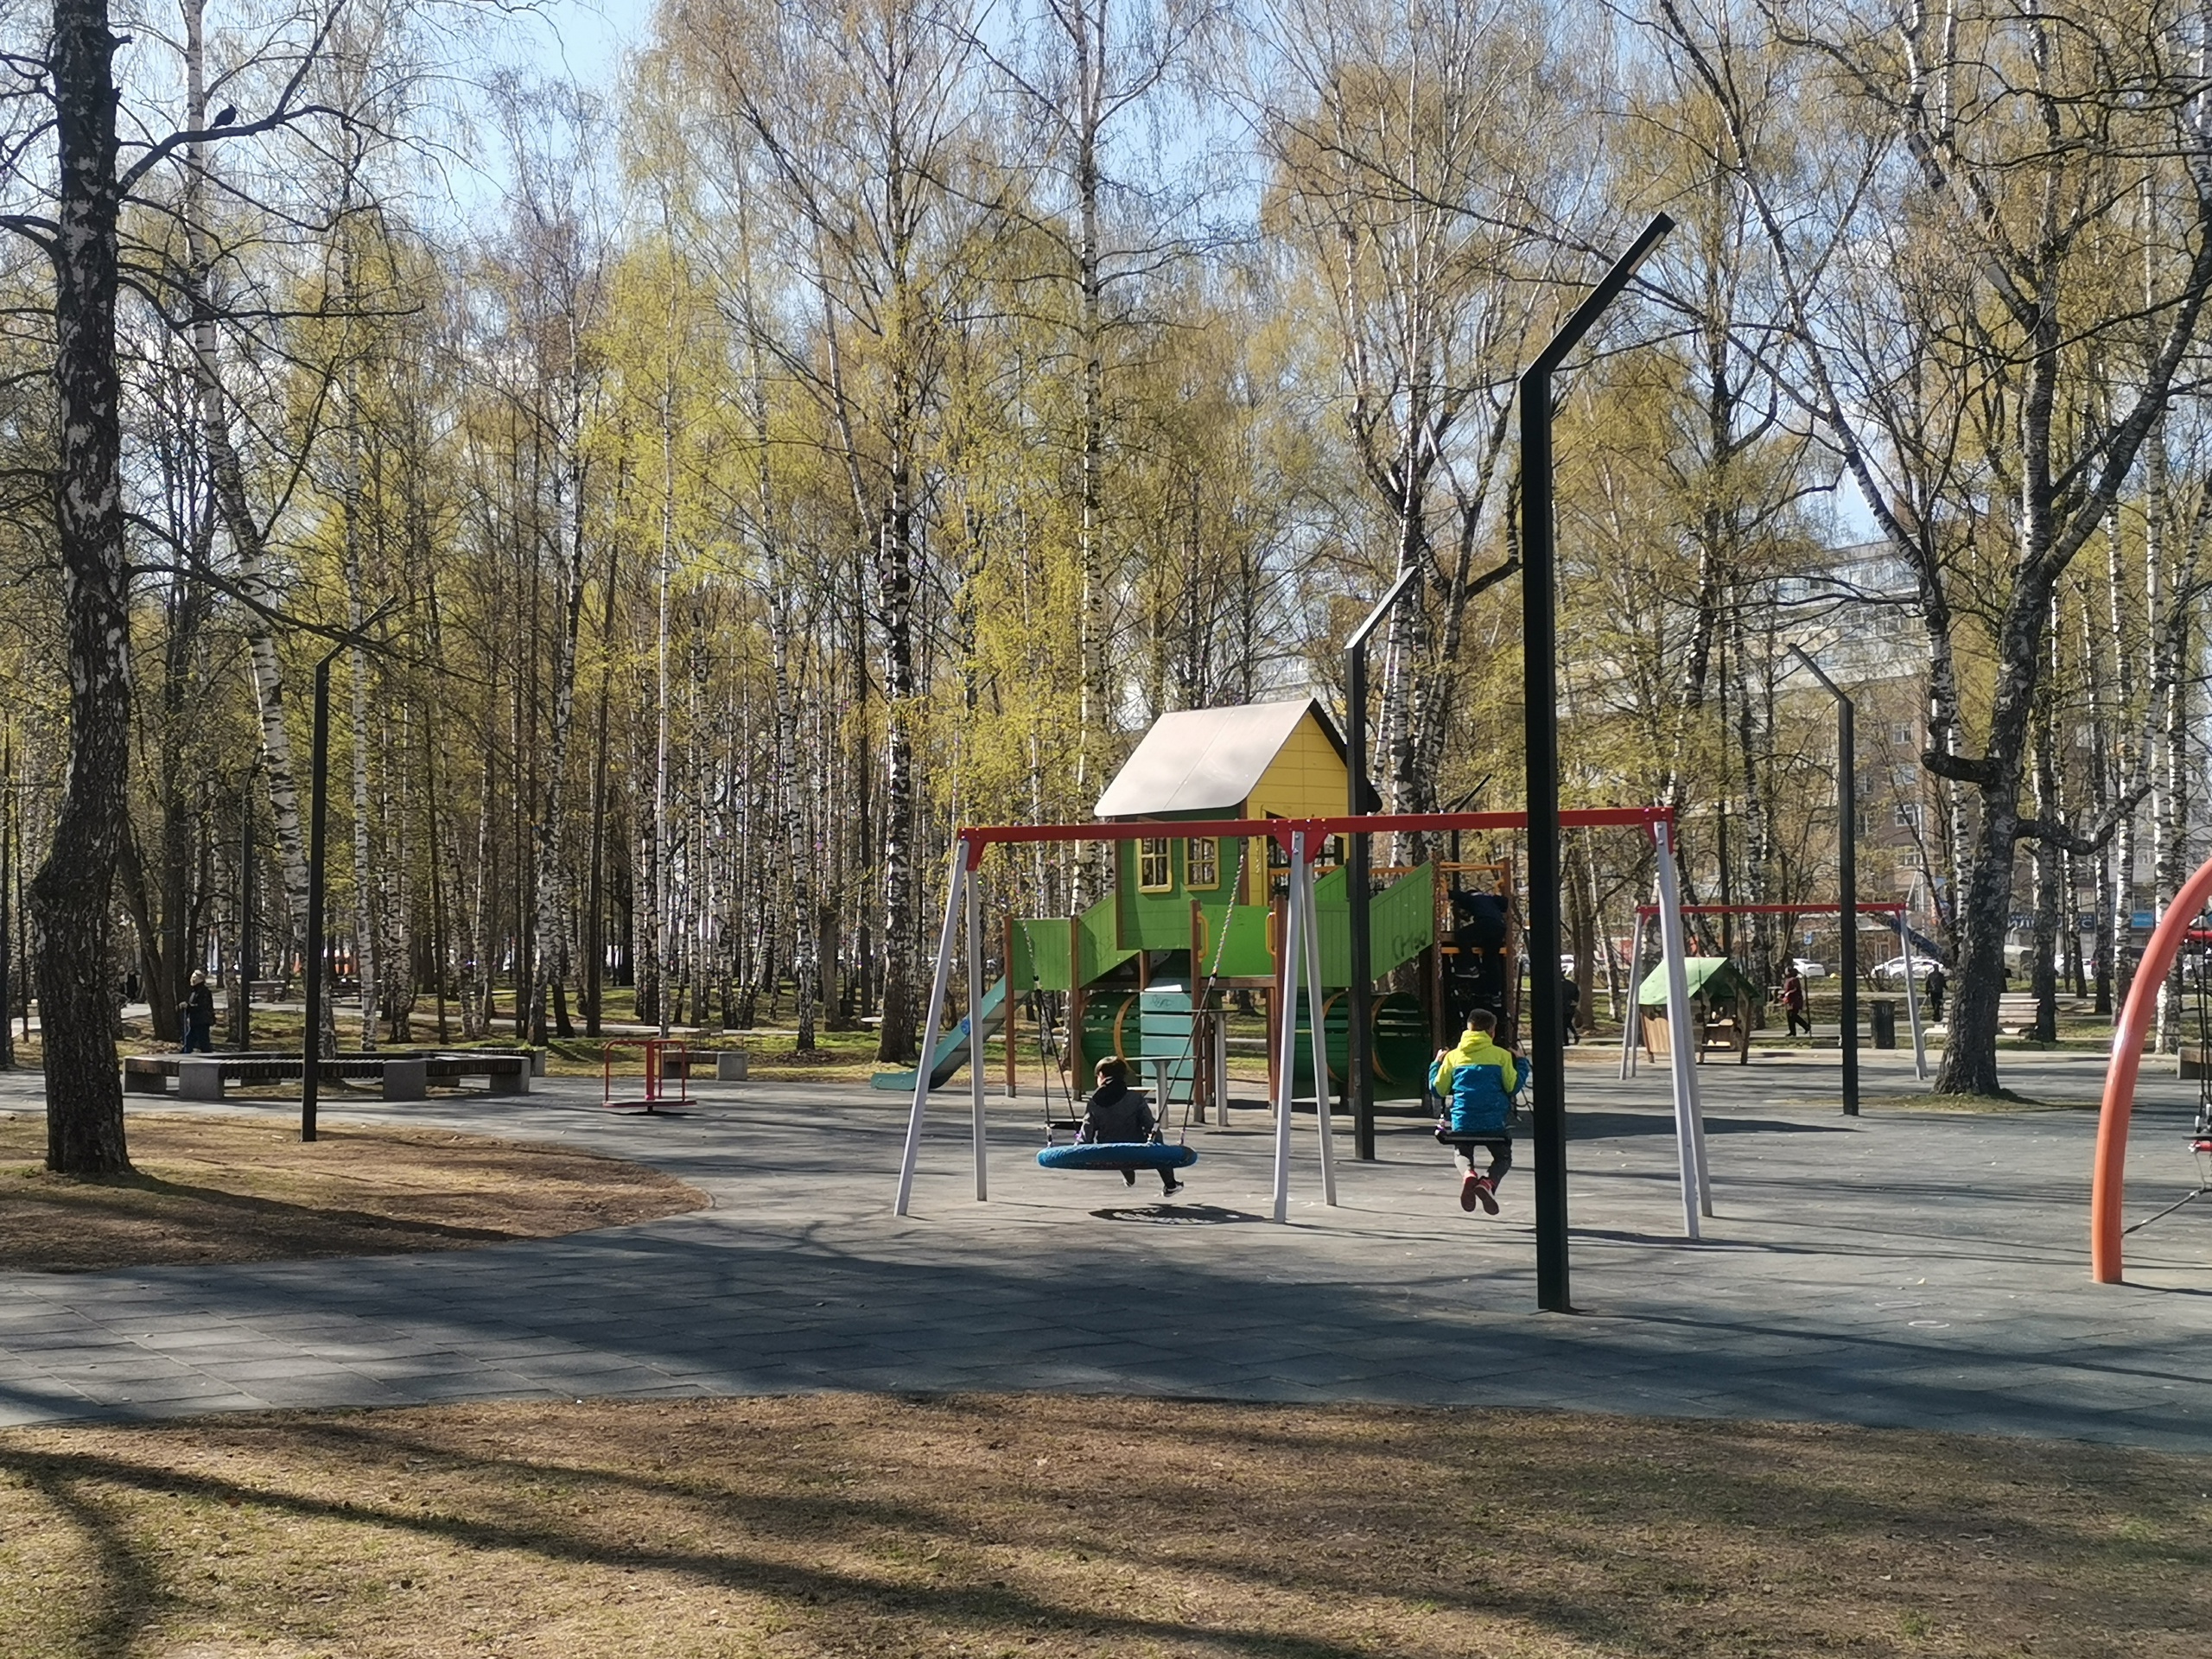 Власти Нижнего Новгорода хотят благоустроить еще один парк 